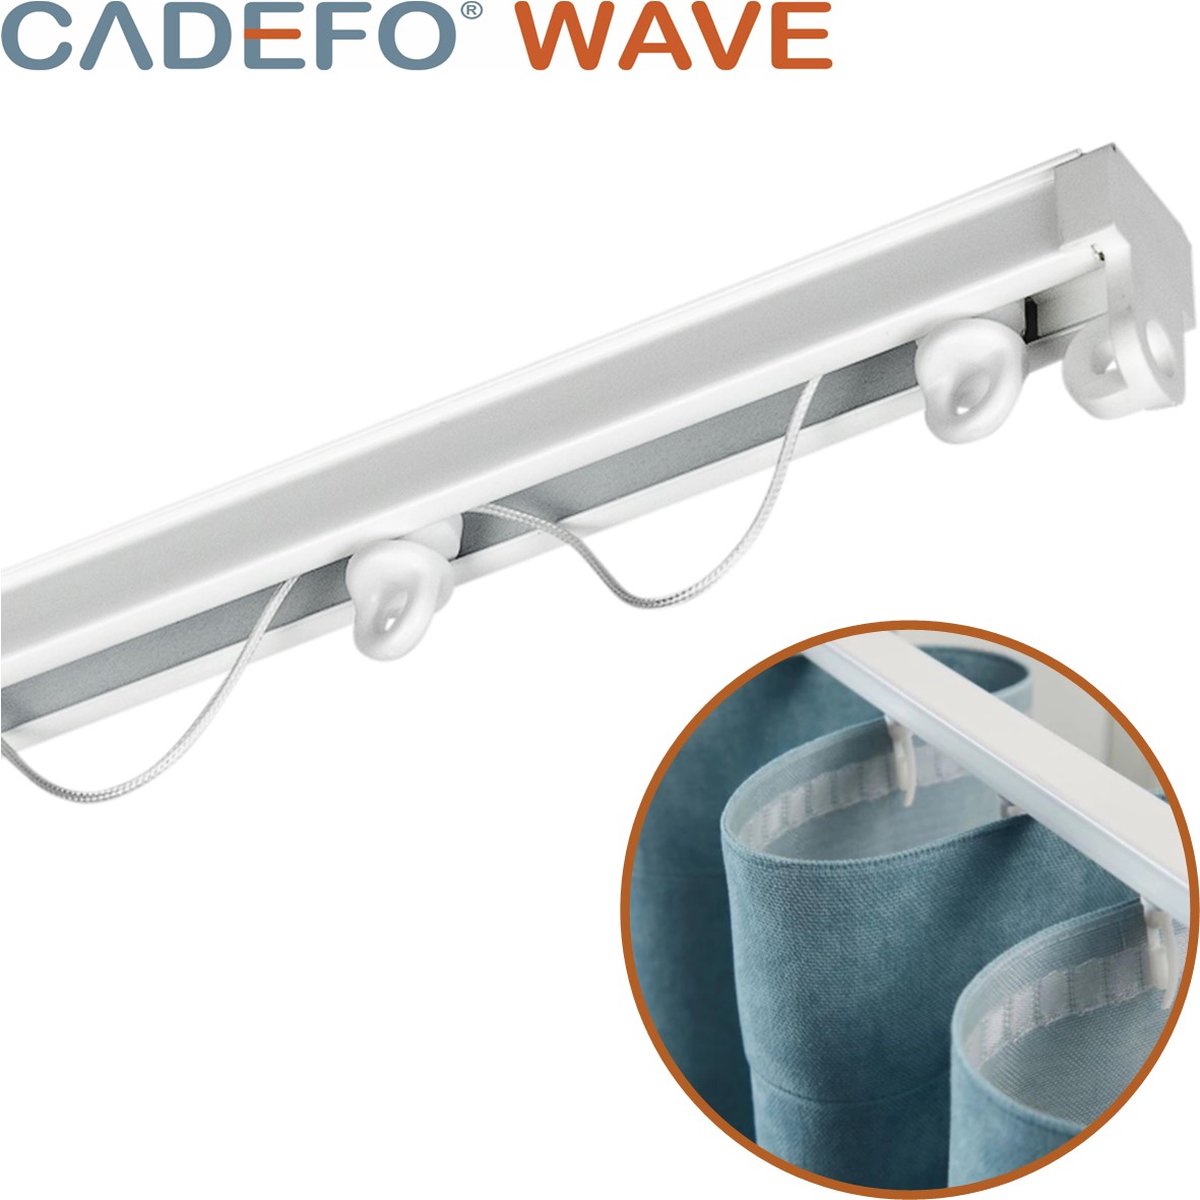 CADEFO WAVE (401 - 450 cm) Gordijnrails - Compleet op maat! - UIT 1 STUK - Leverbaar tot 6 meter - Plafondbevestiging - Lengte 408 cm